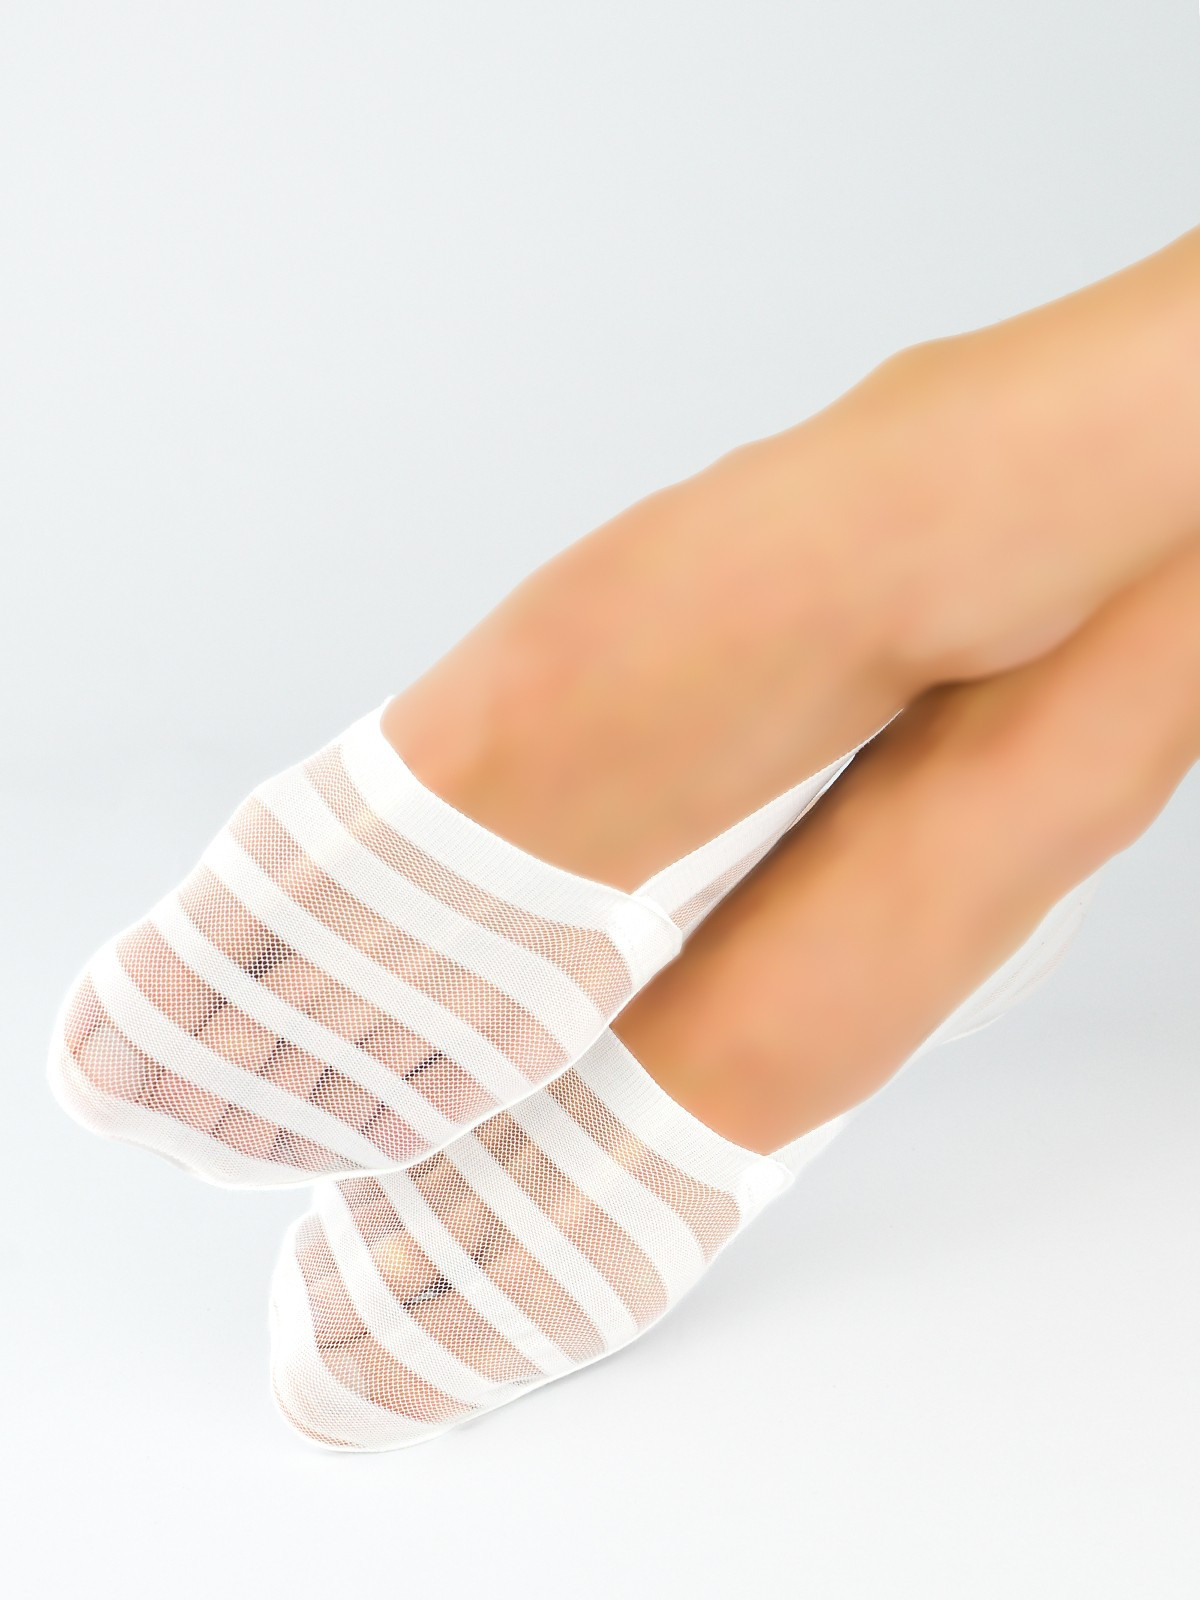 Dámské ponožky - baleríny Noviti SN029 Silikon, ABS bílá 36-41